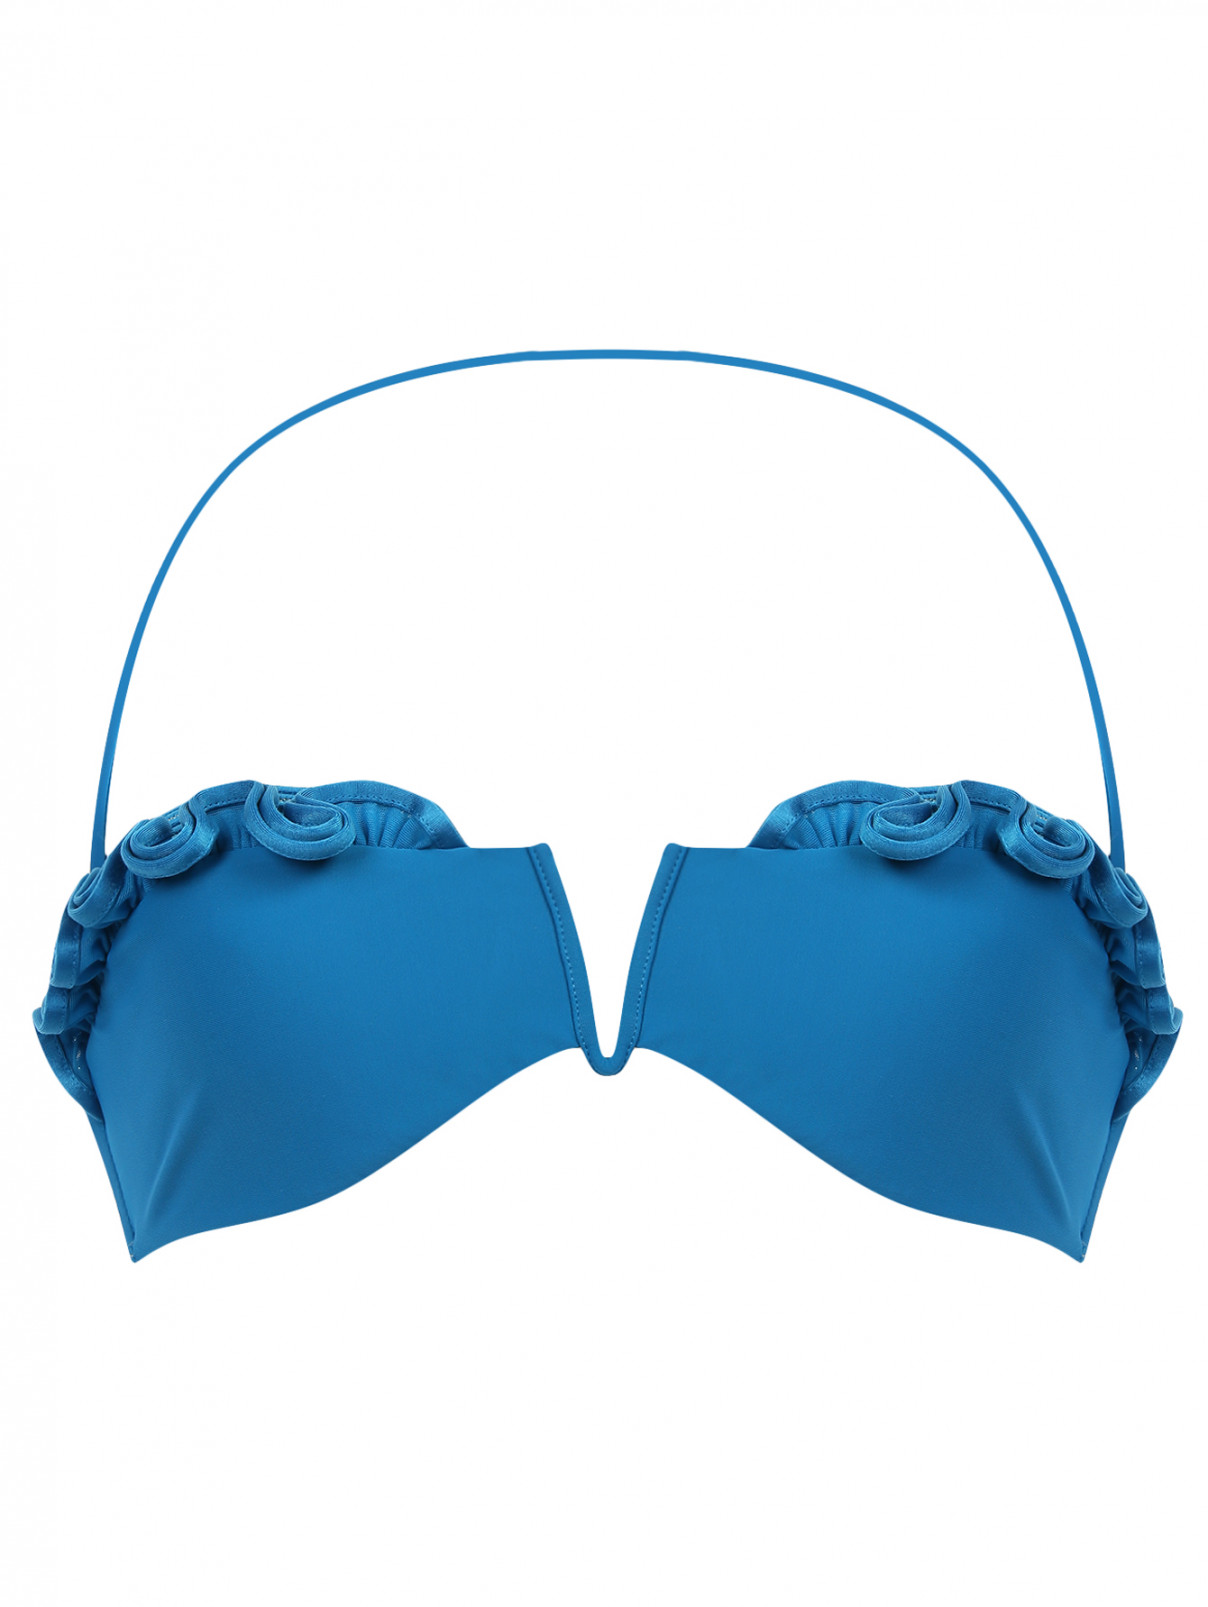 Купальный бюстгалтер-бандо с декором La Perla  –  Общий вид  – Цвет:  Синий